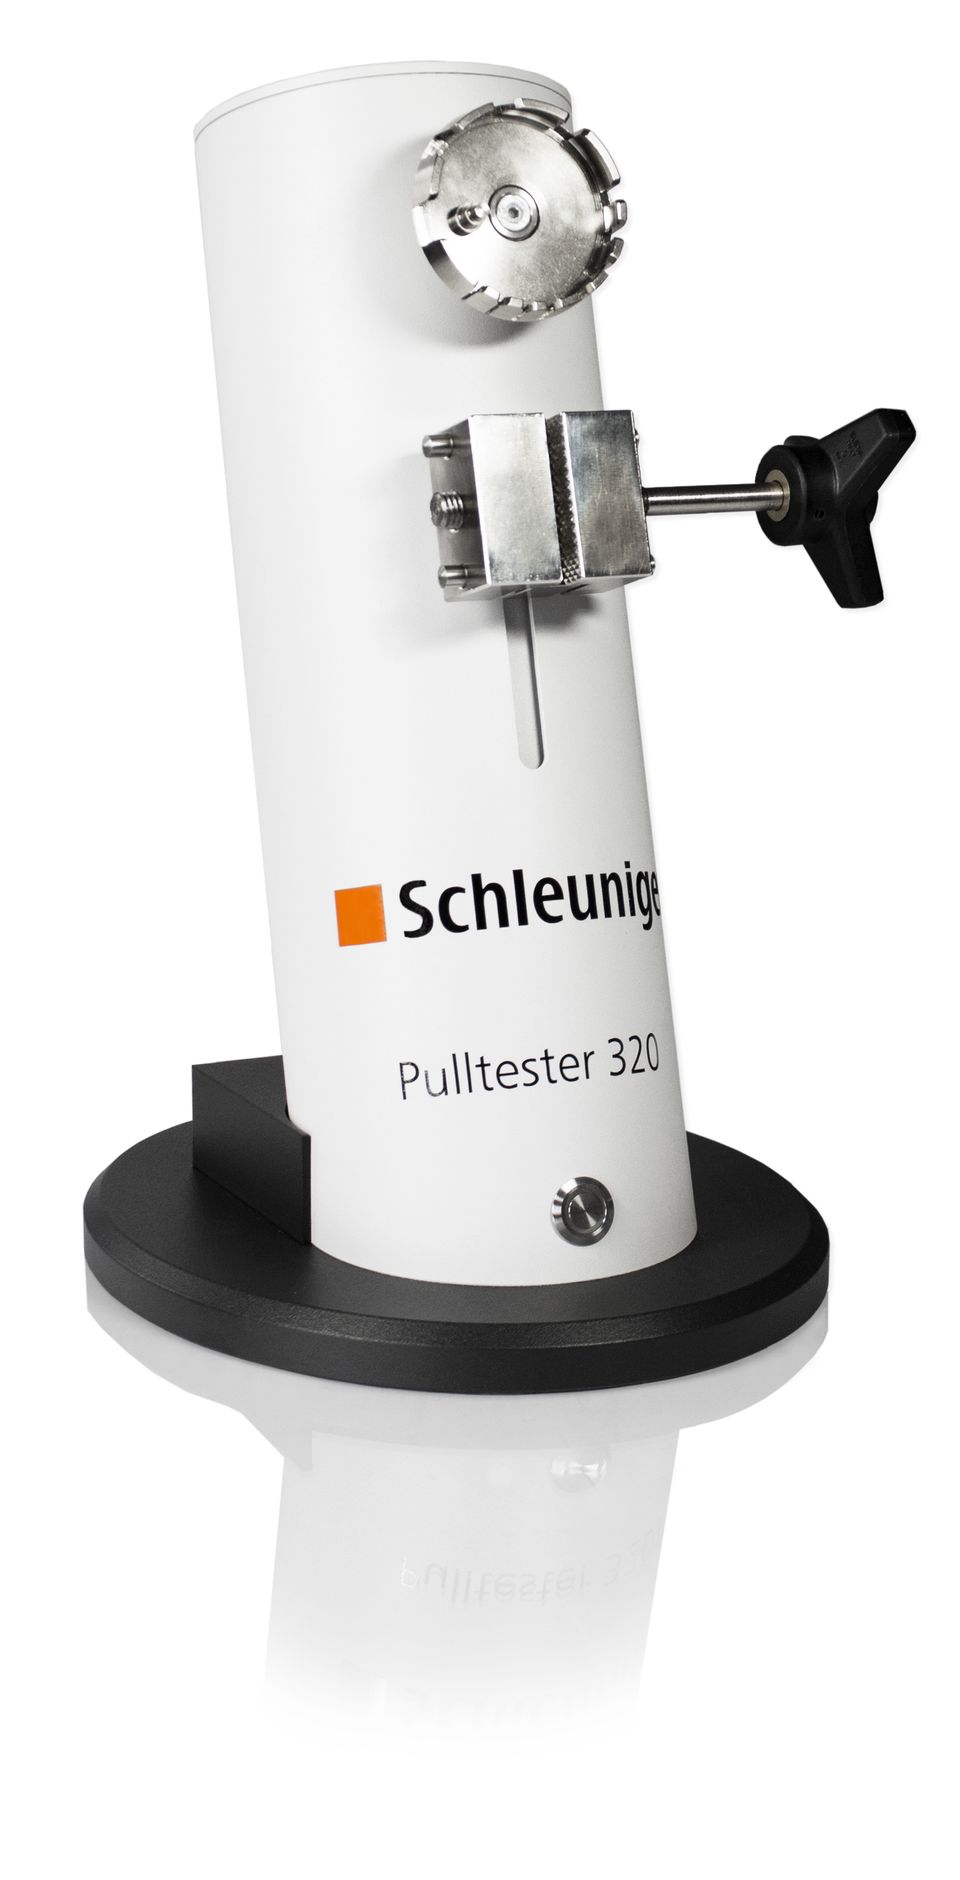 Schleuniger索铌格拉力测试设备PullTester 320